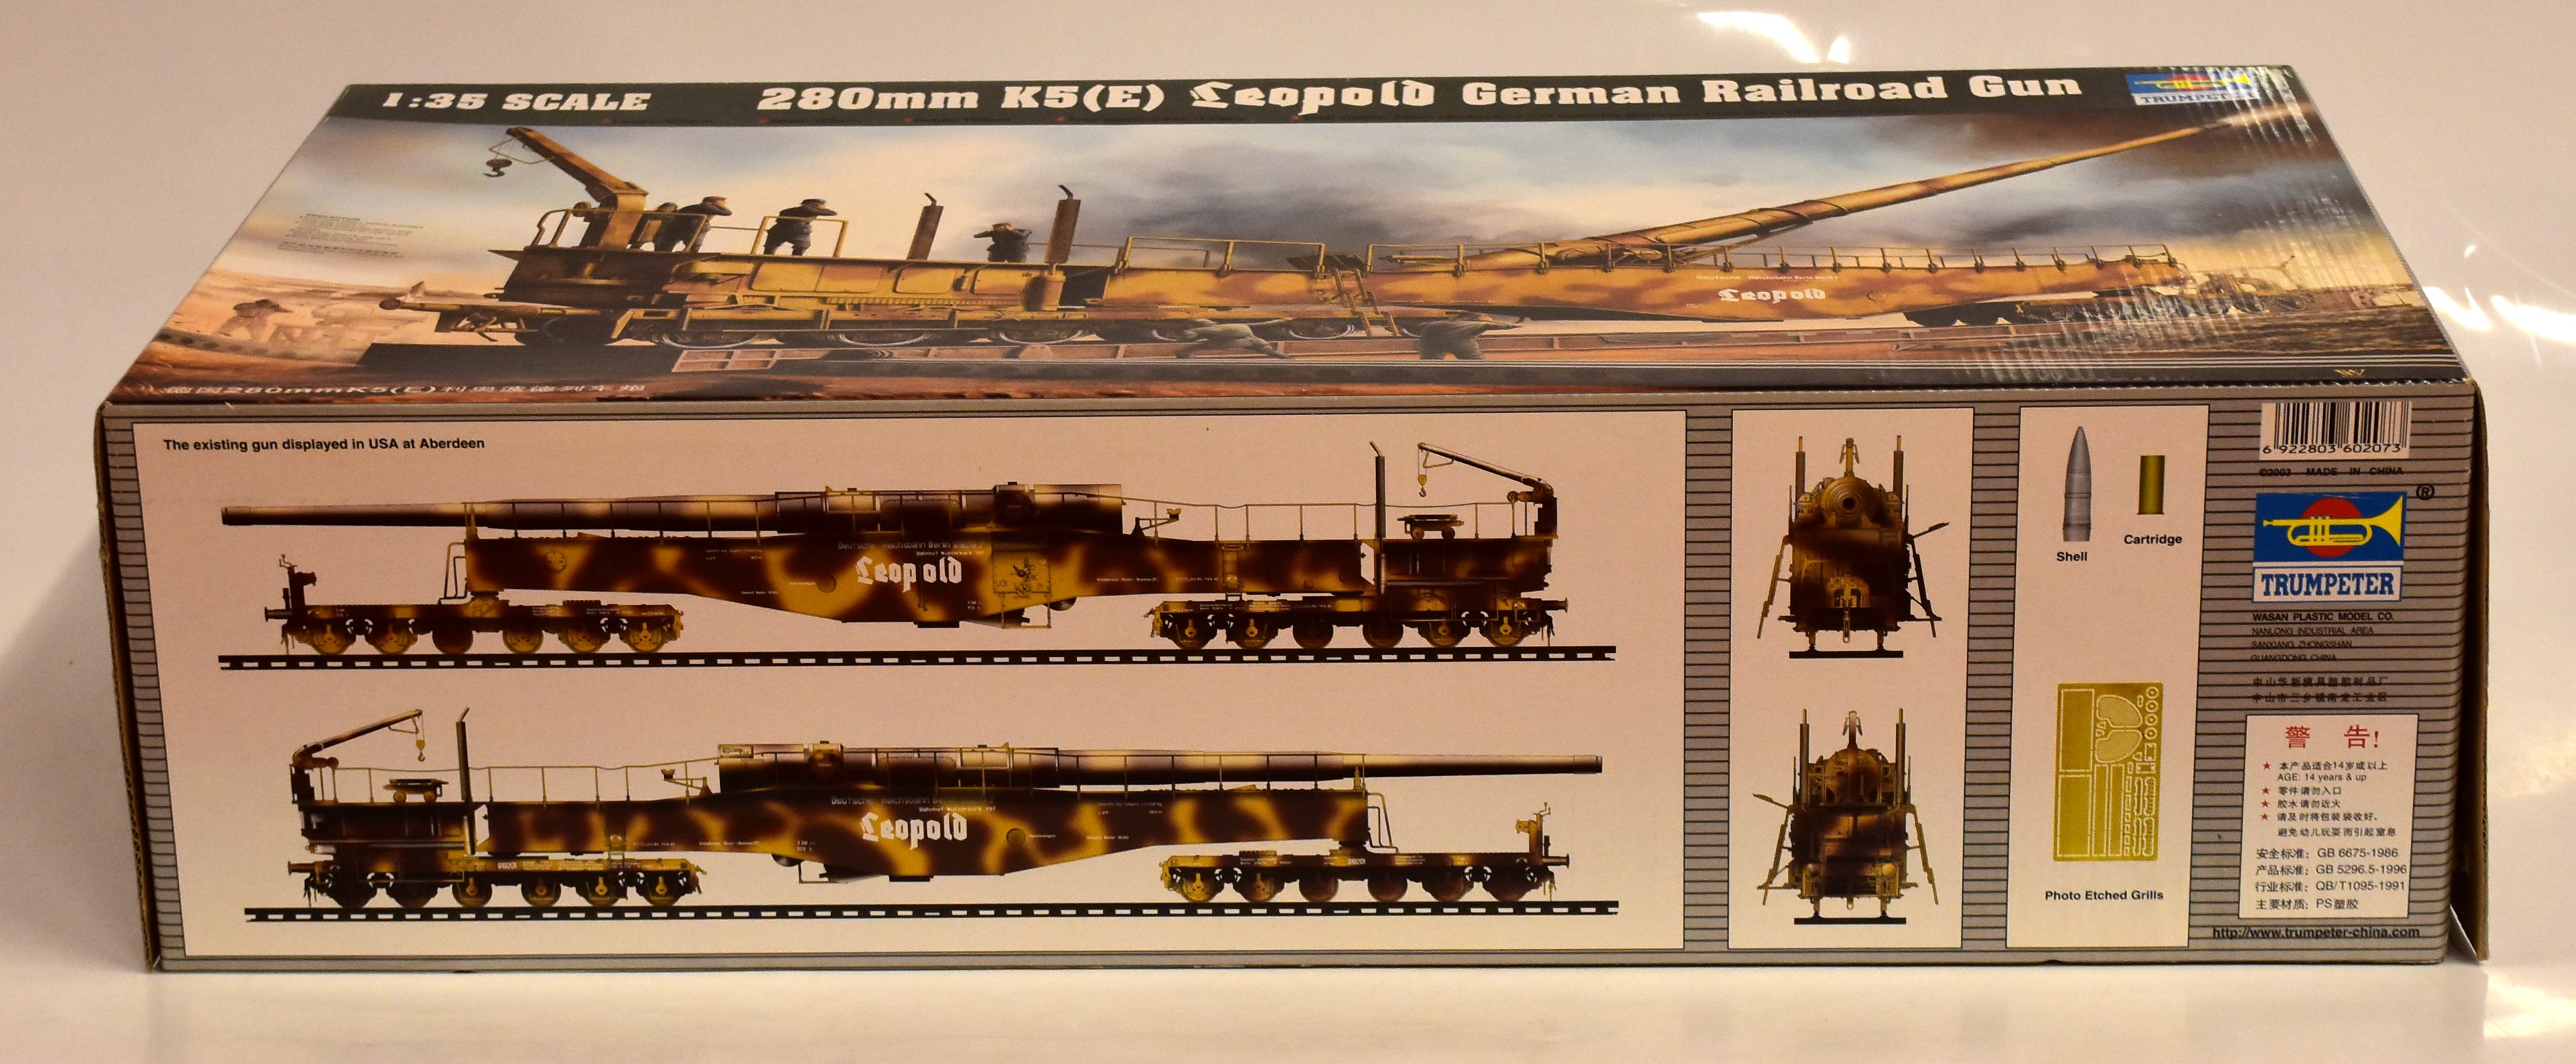 TRUMPETER 1/35 280mm K5(E) Leopold German Railroad Gun 00207